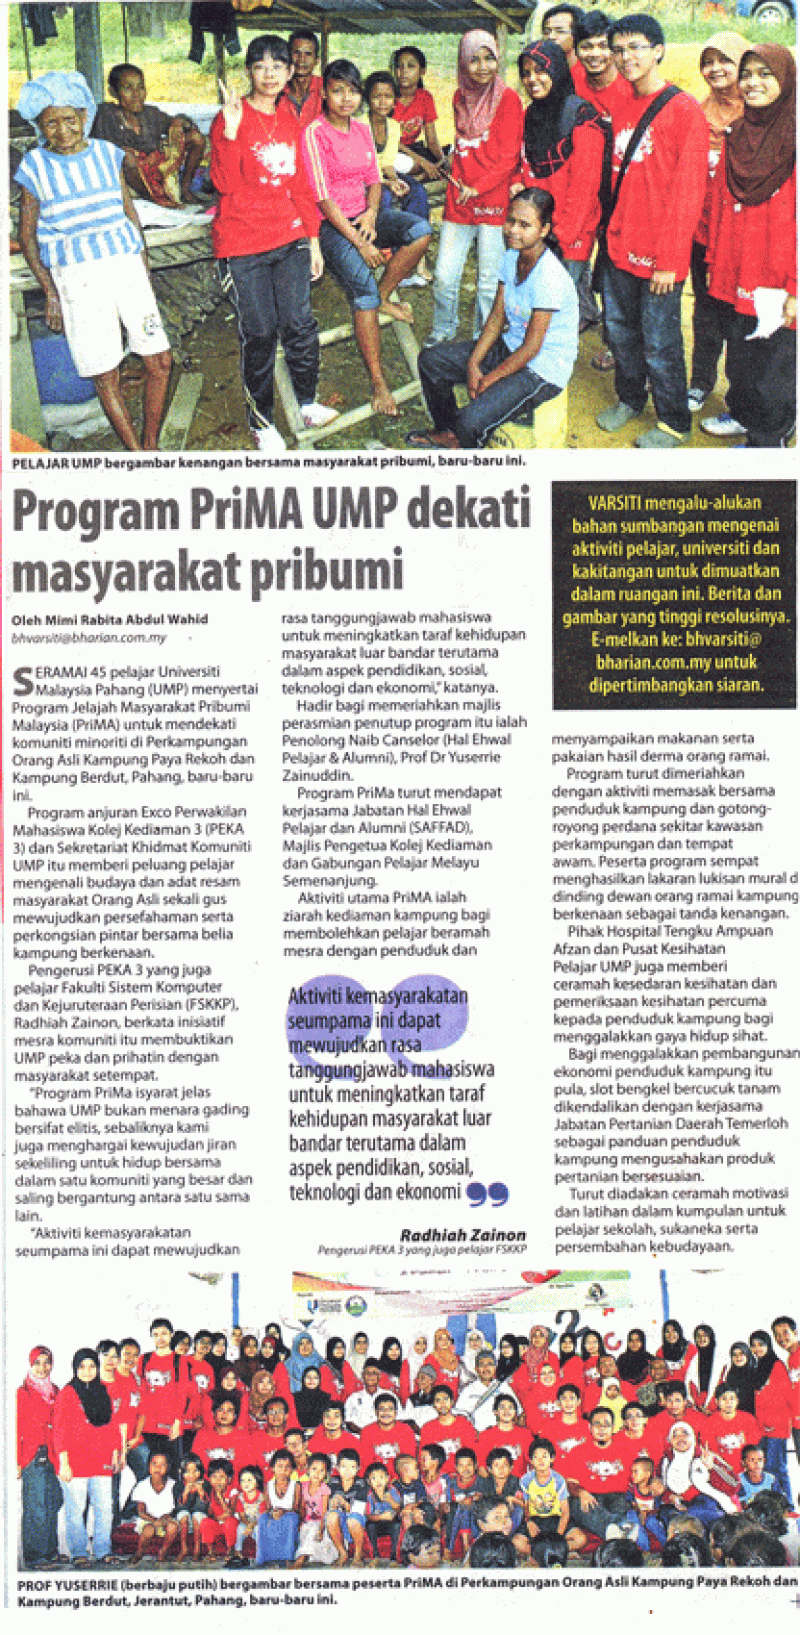 Program PriMa UMP Dekati Masyarakat Pribumi